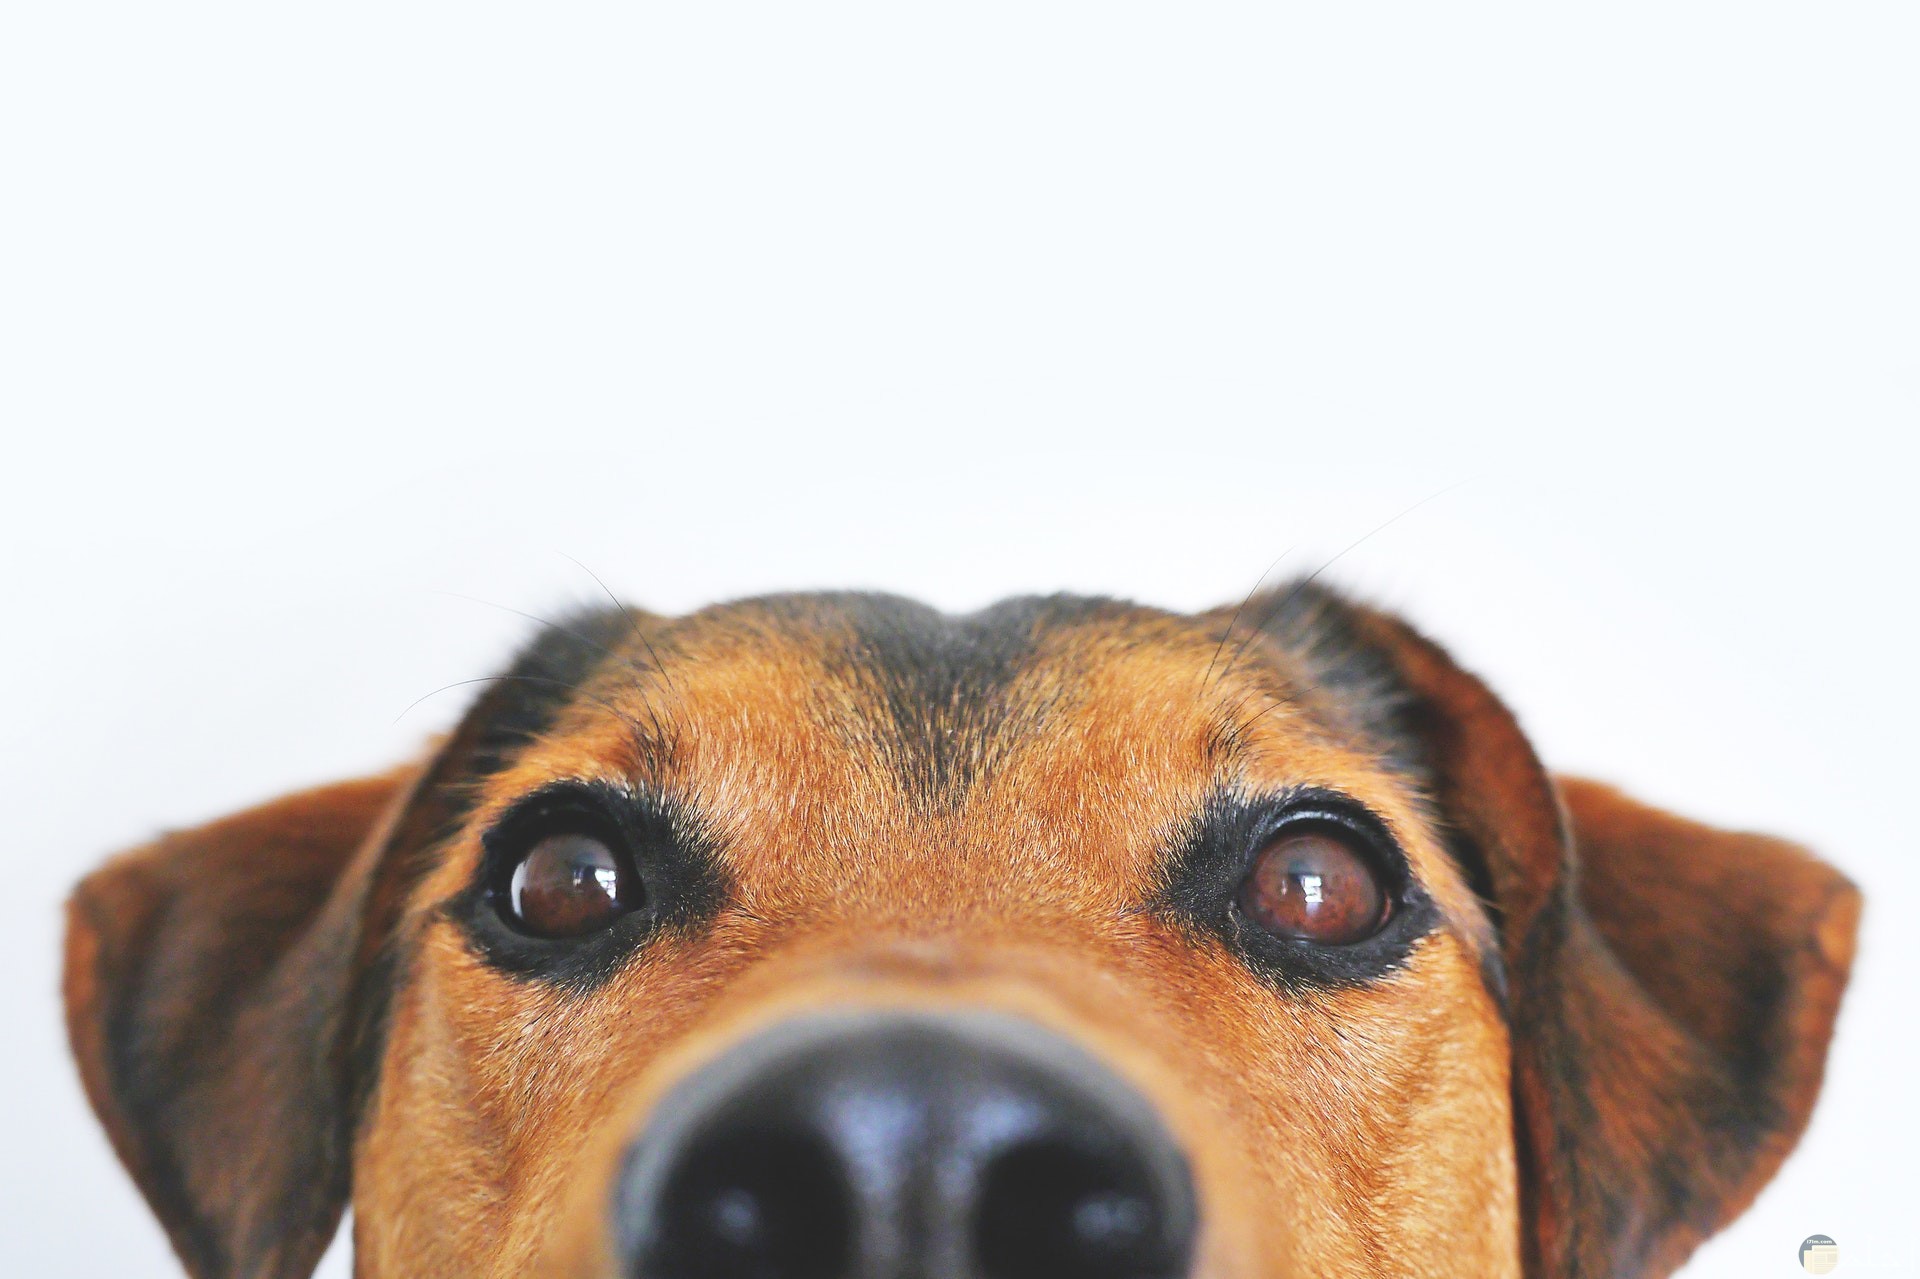 صورة كوميدية لوجه كلب مع تعابير وجة ونظرة عينين مضحكة جدا